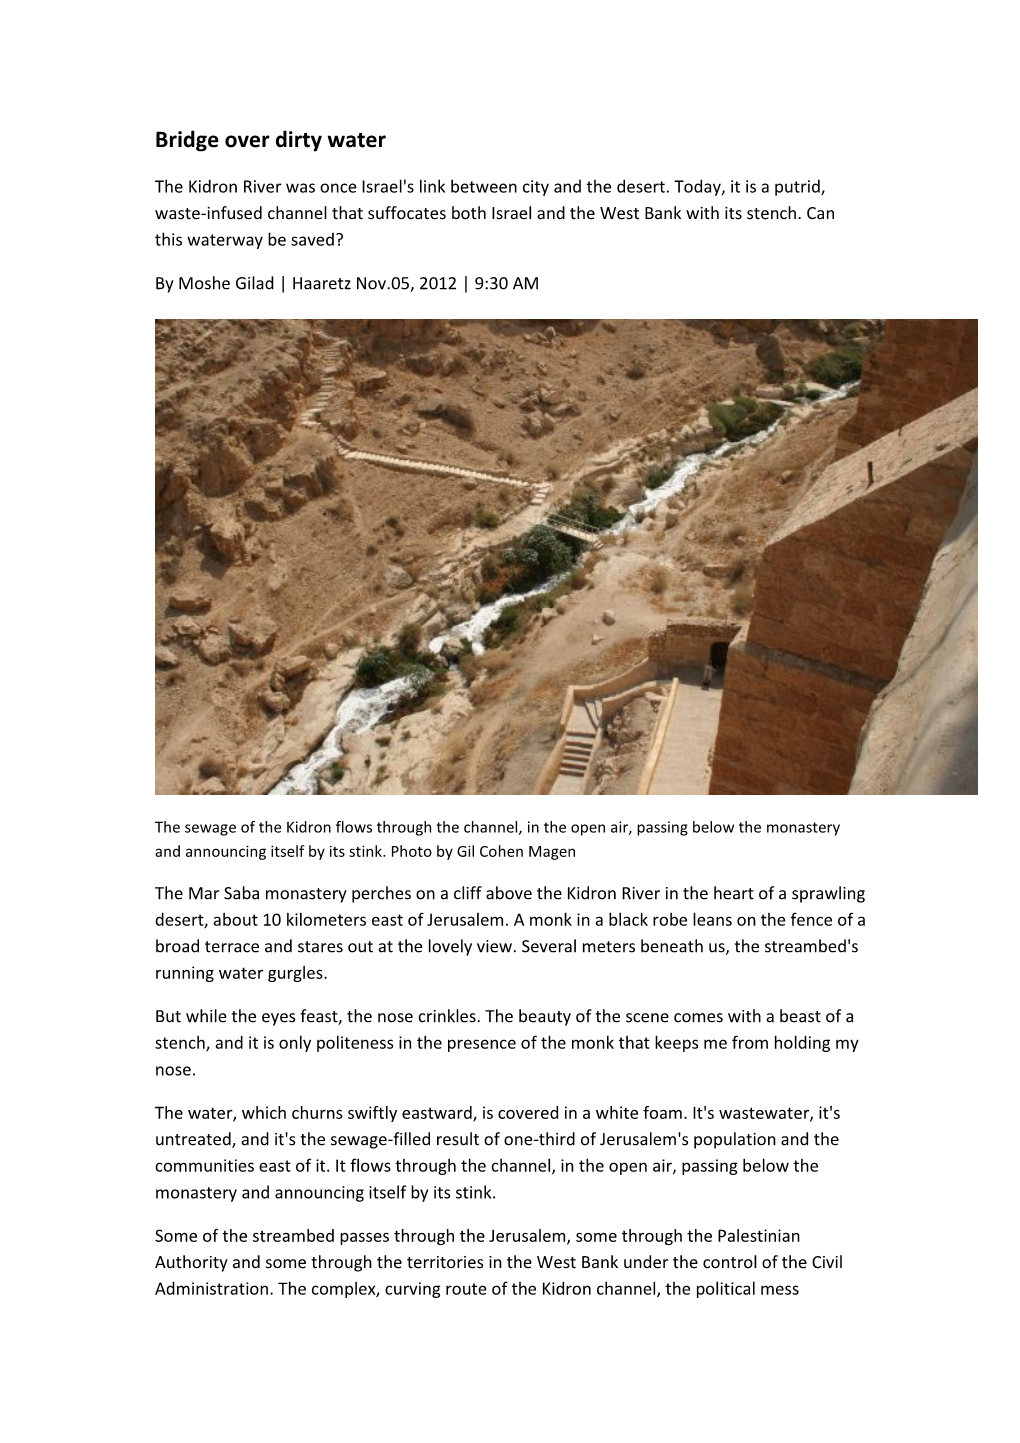 Bridge Over Dirty Water-Haaretz Article